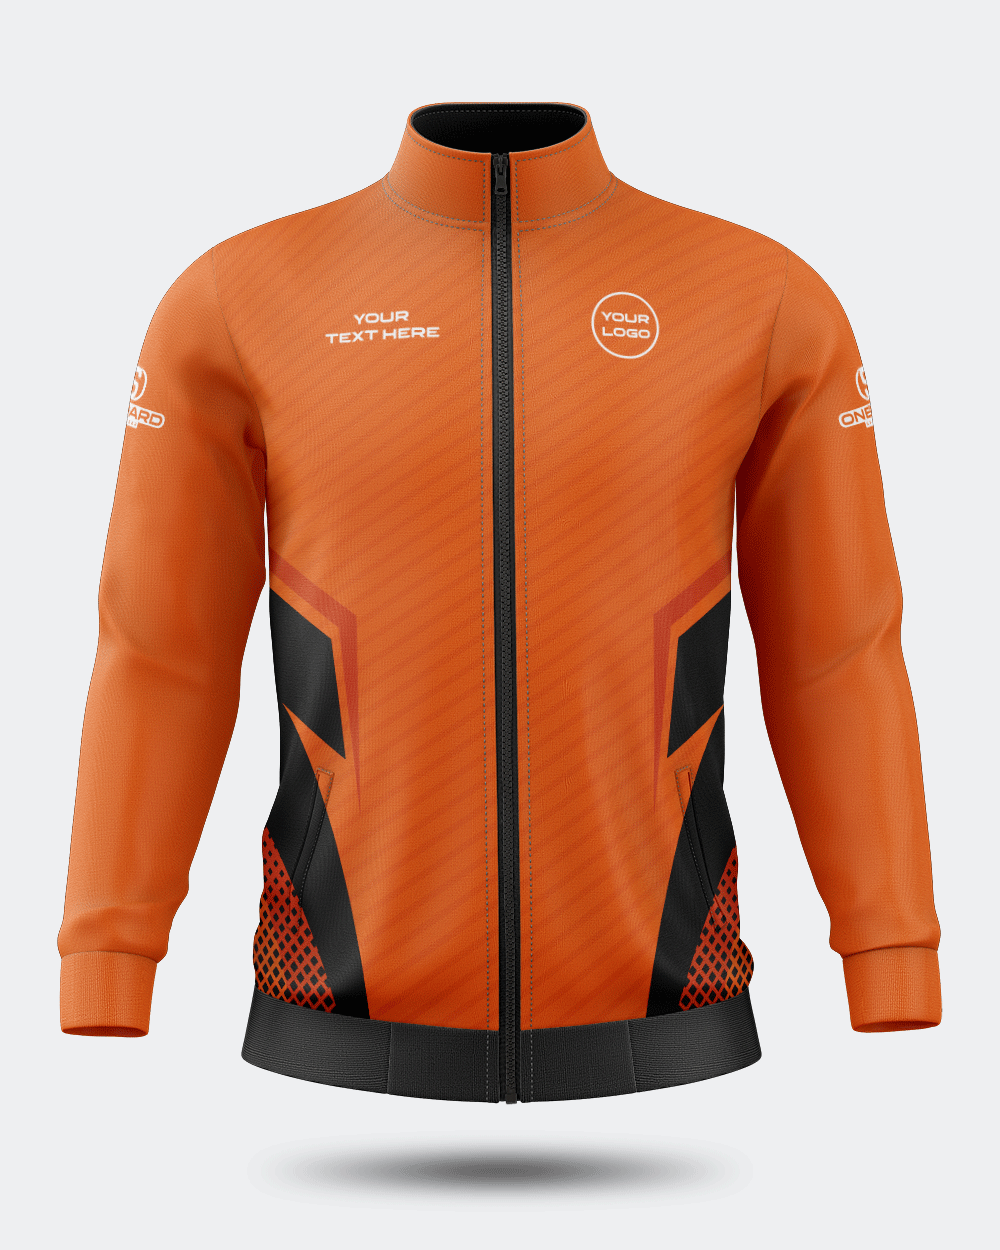 Moscow Jacket Range – Onboard Sportswear